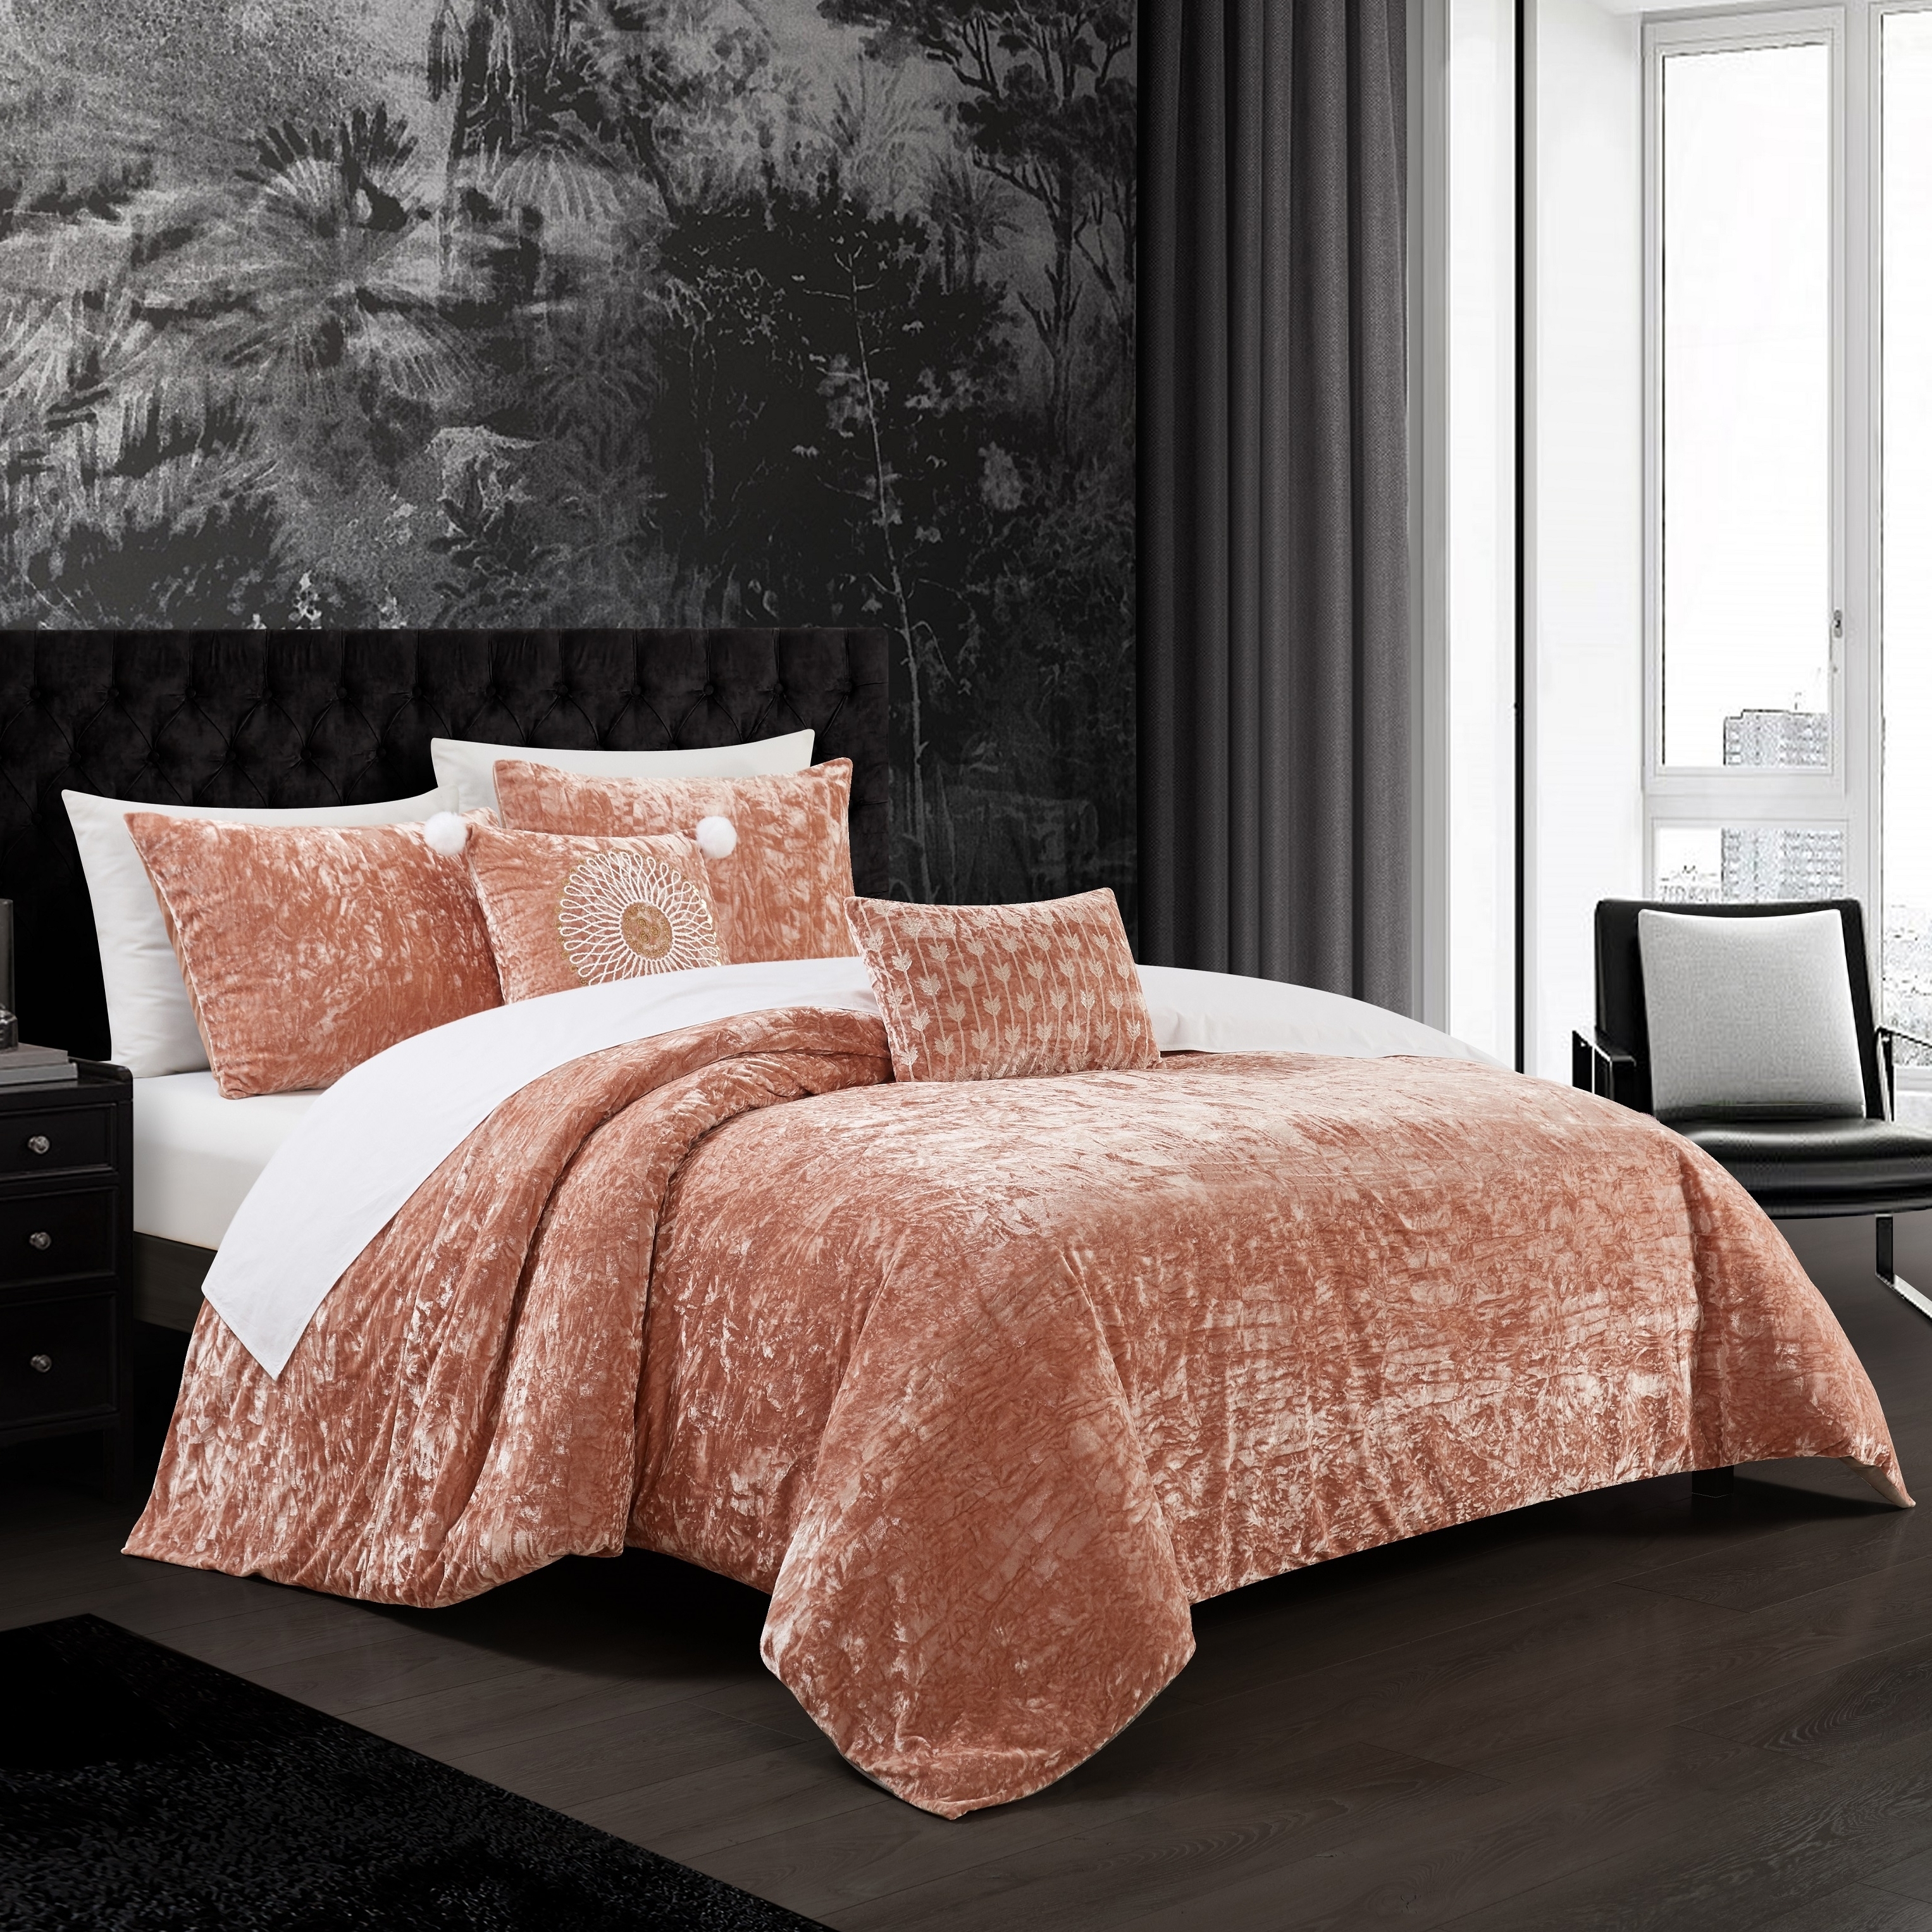 Giuliana 5 Piece Comforter Set Crinkle Crushed Velvet Bedding - Beige, Queen